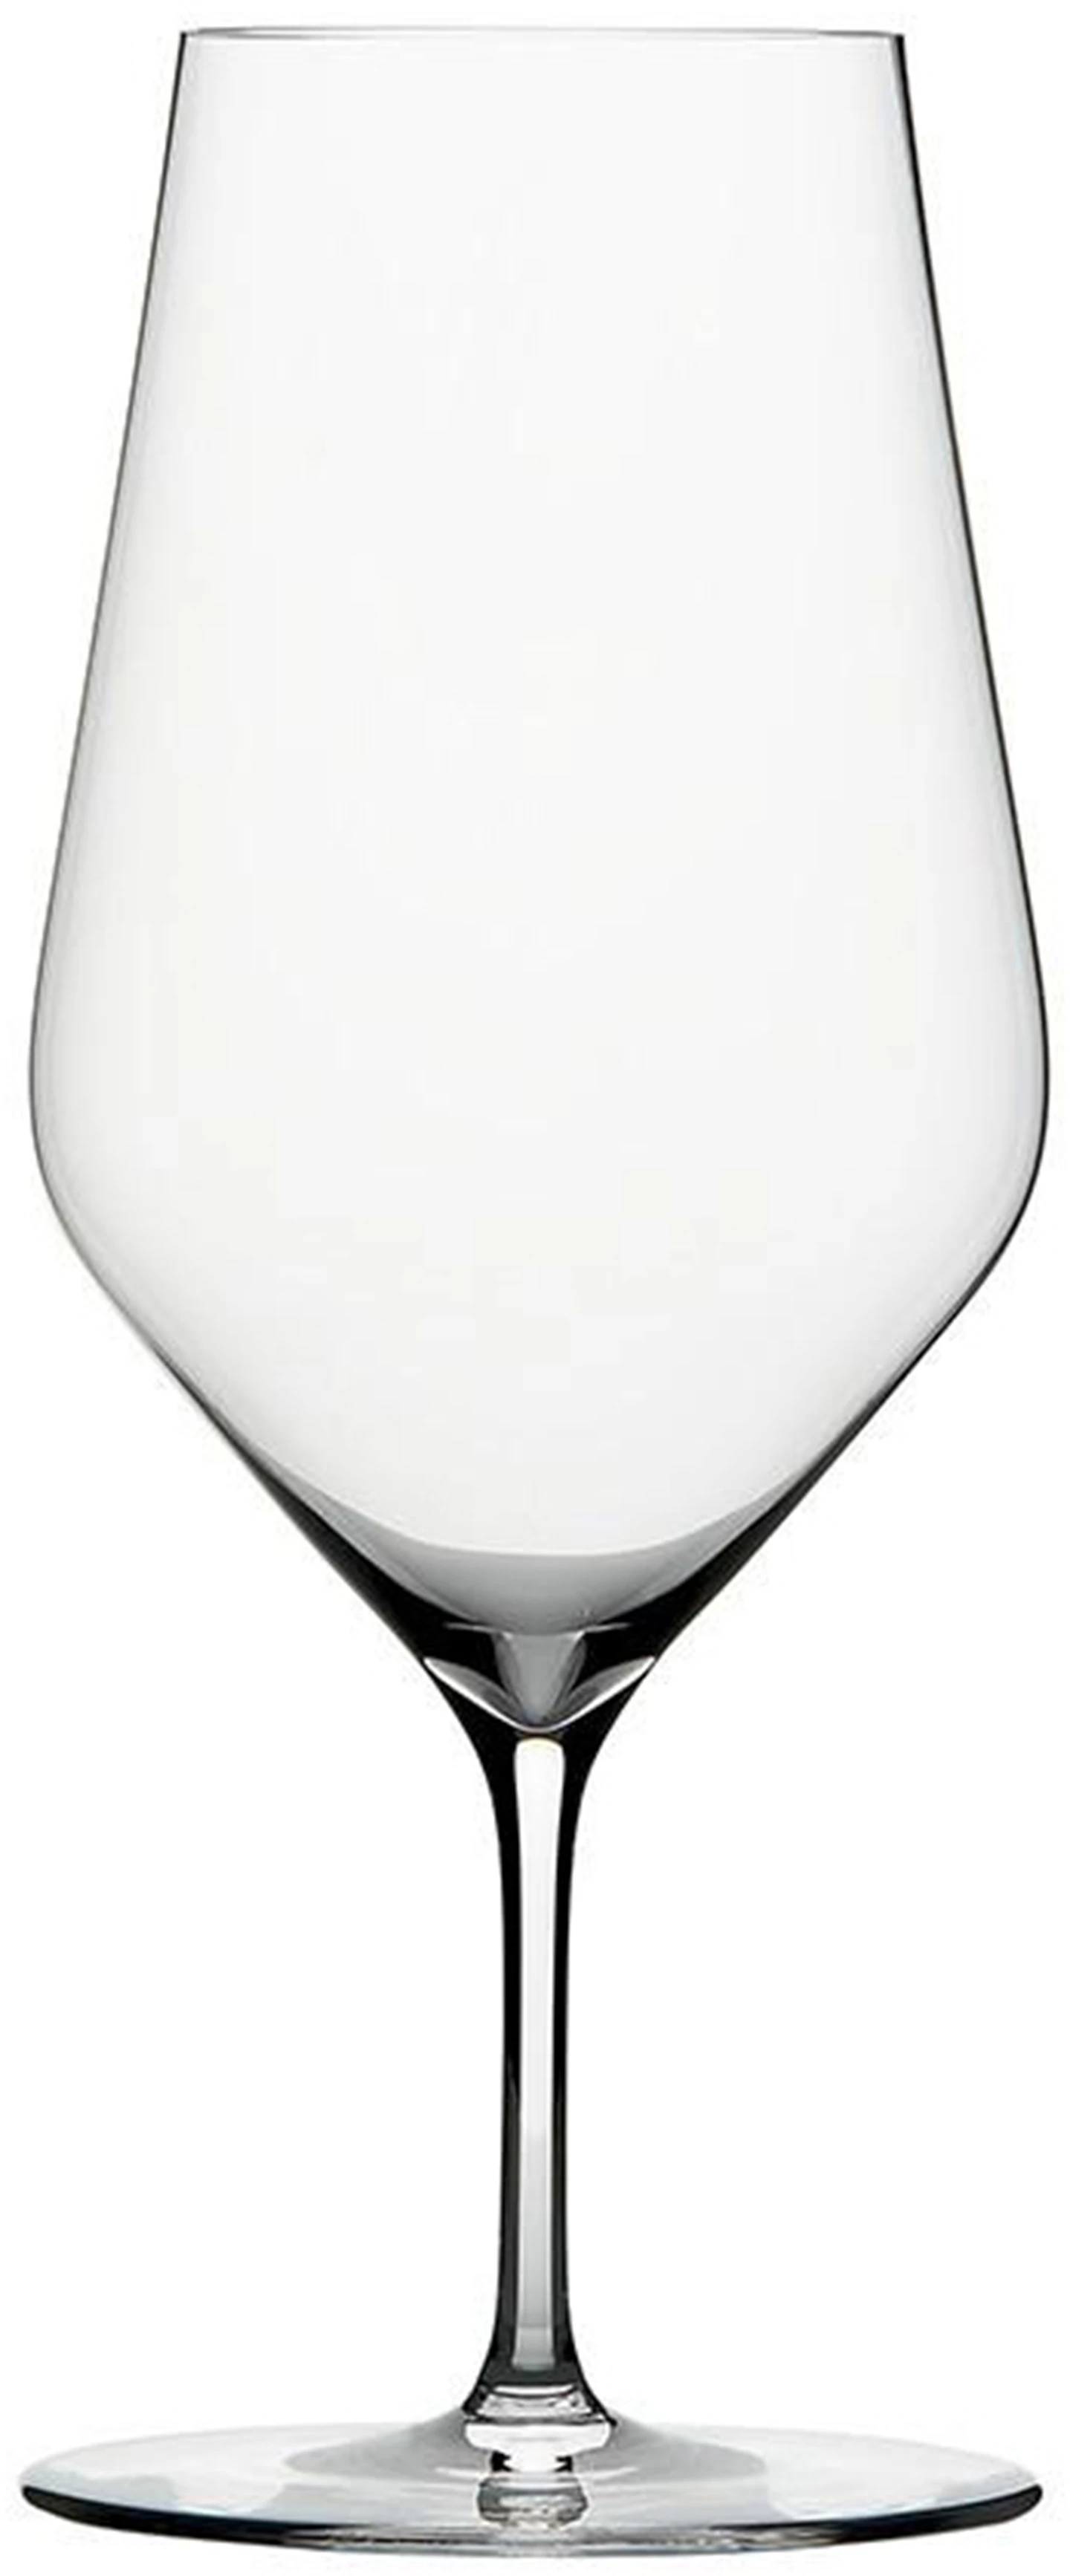 Løgismose Grej Zalto Glasperfektion vandglas 6 stk - 127373